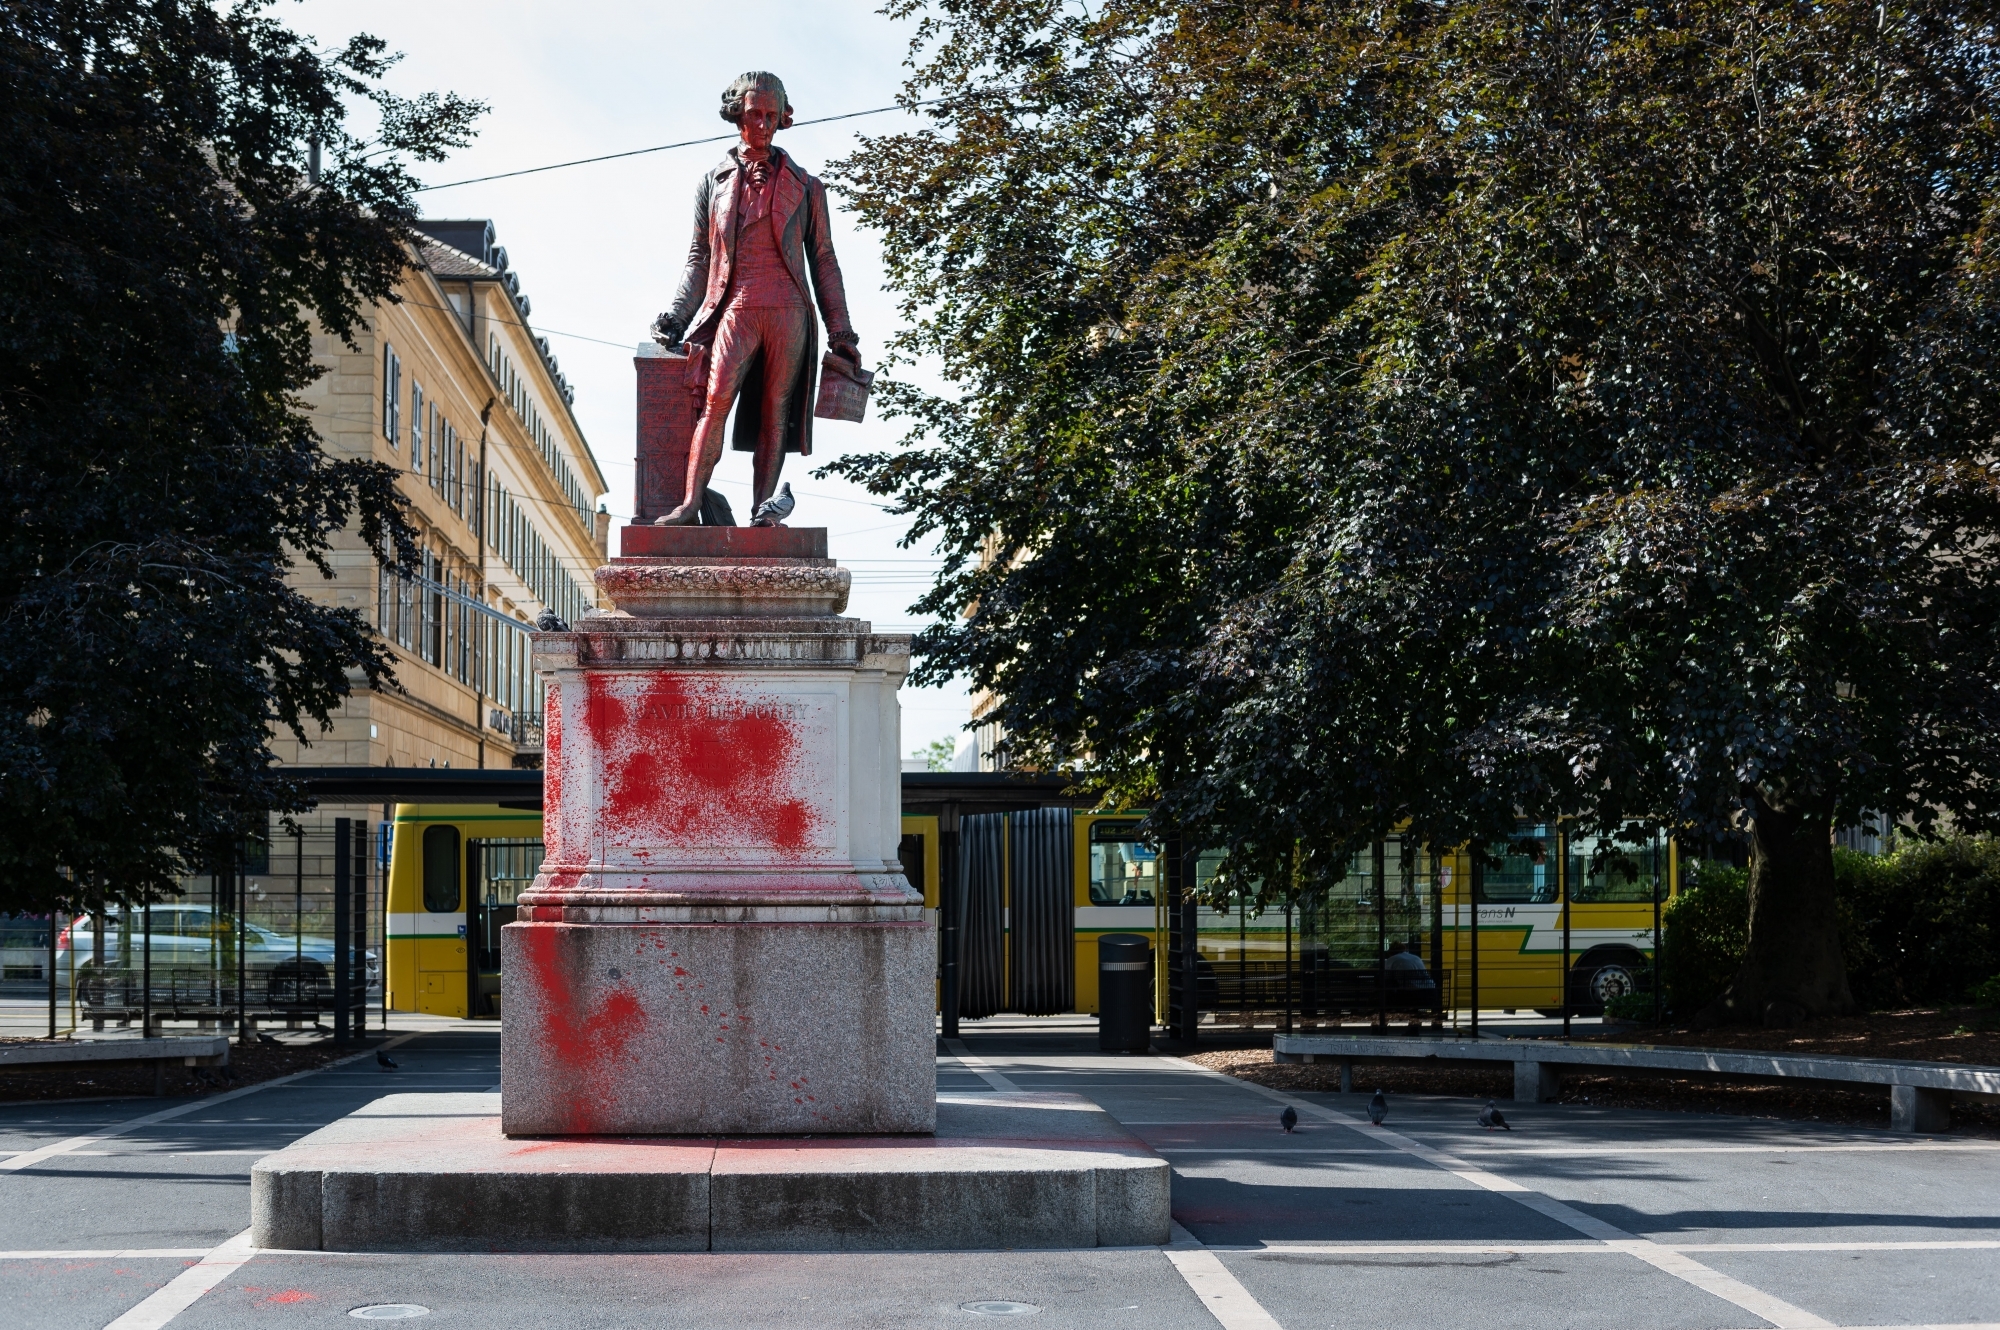 Dans la nuit de dimanche à lundi 13 juillet, la statue de David de Pury, au centre de Neuchâtel, a été recouverte de peinture rouge.